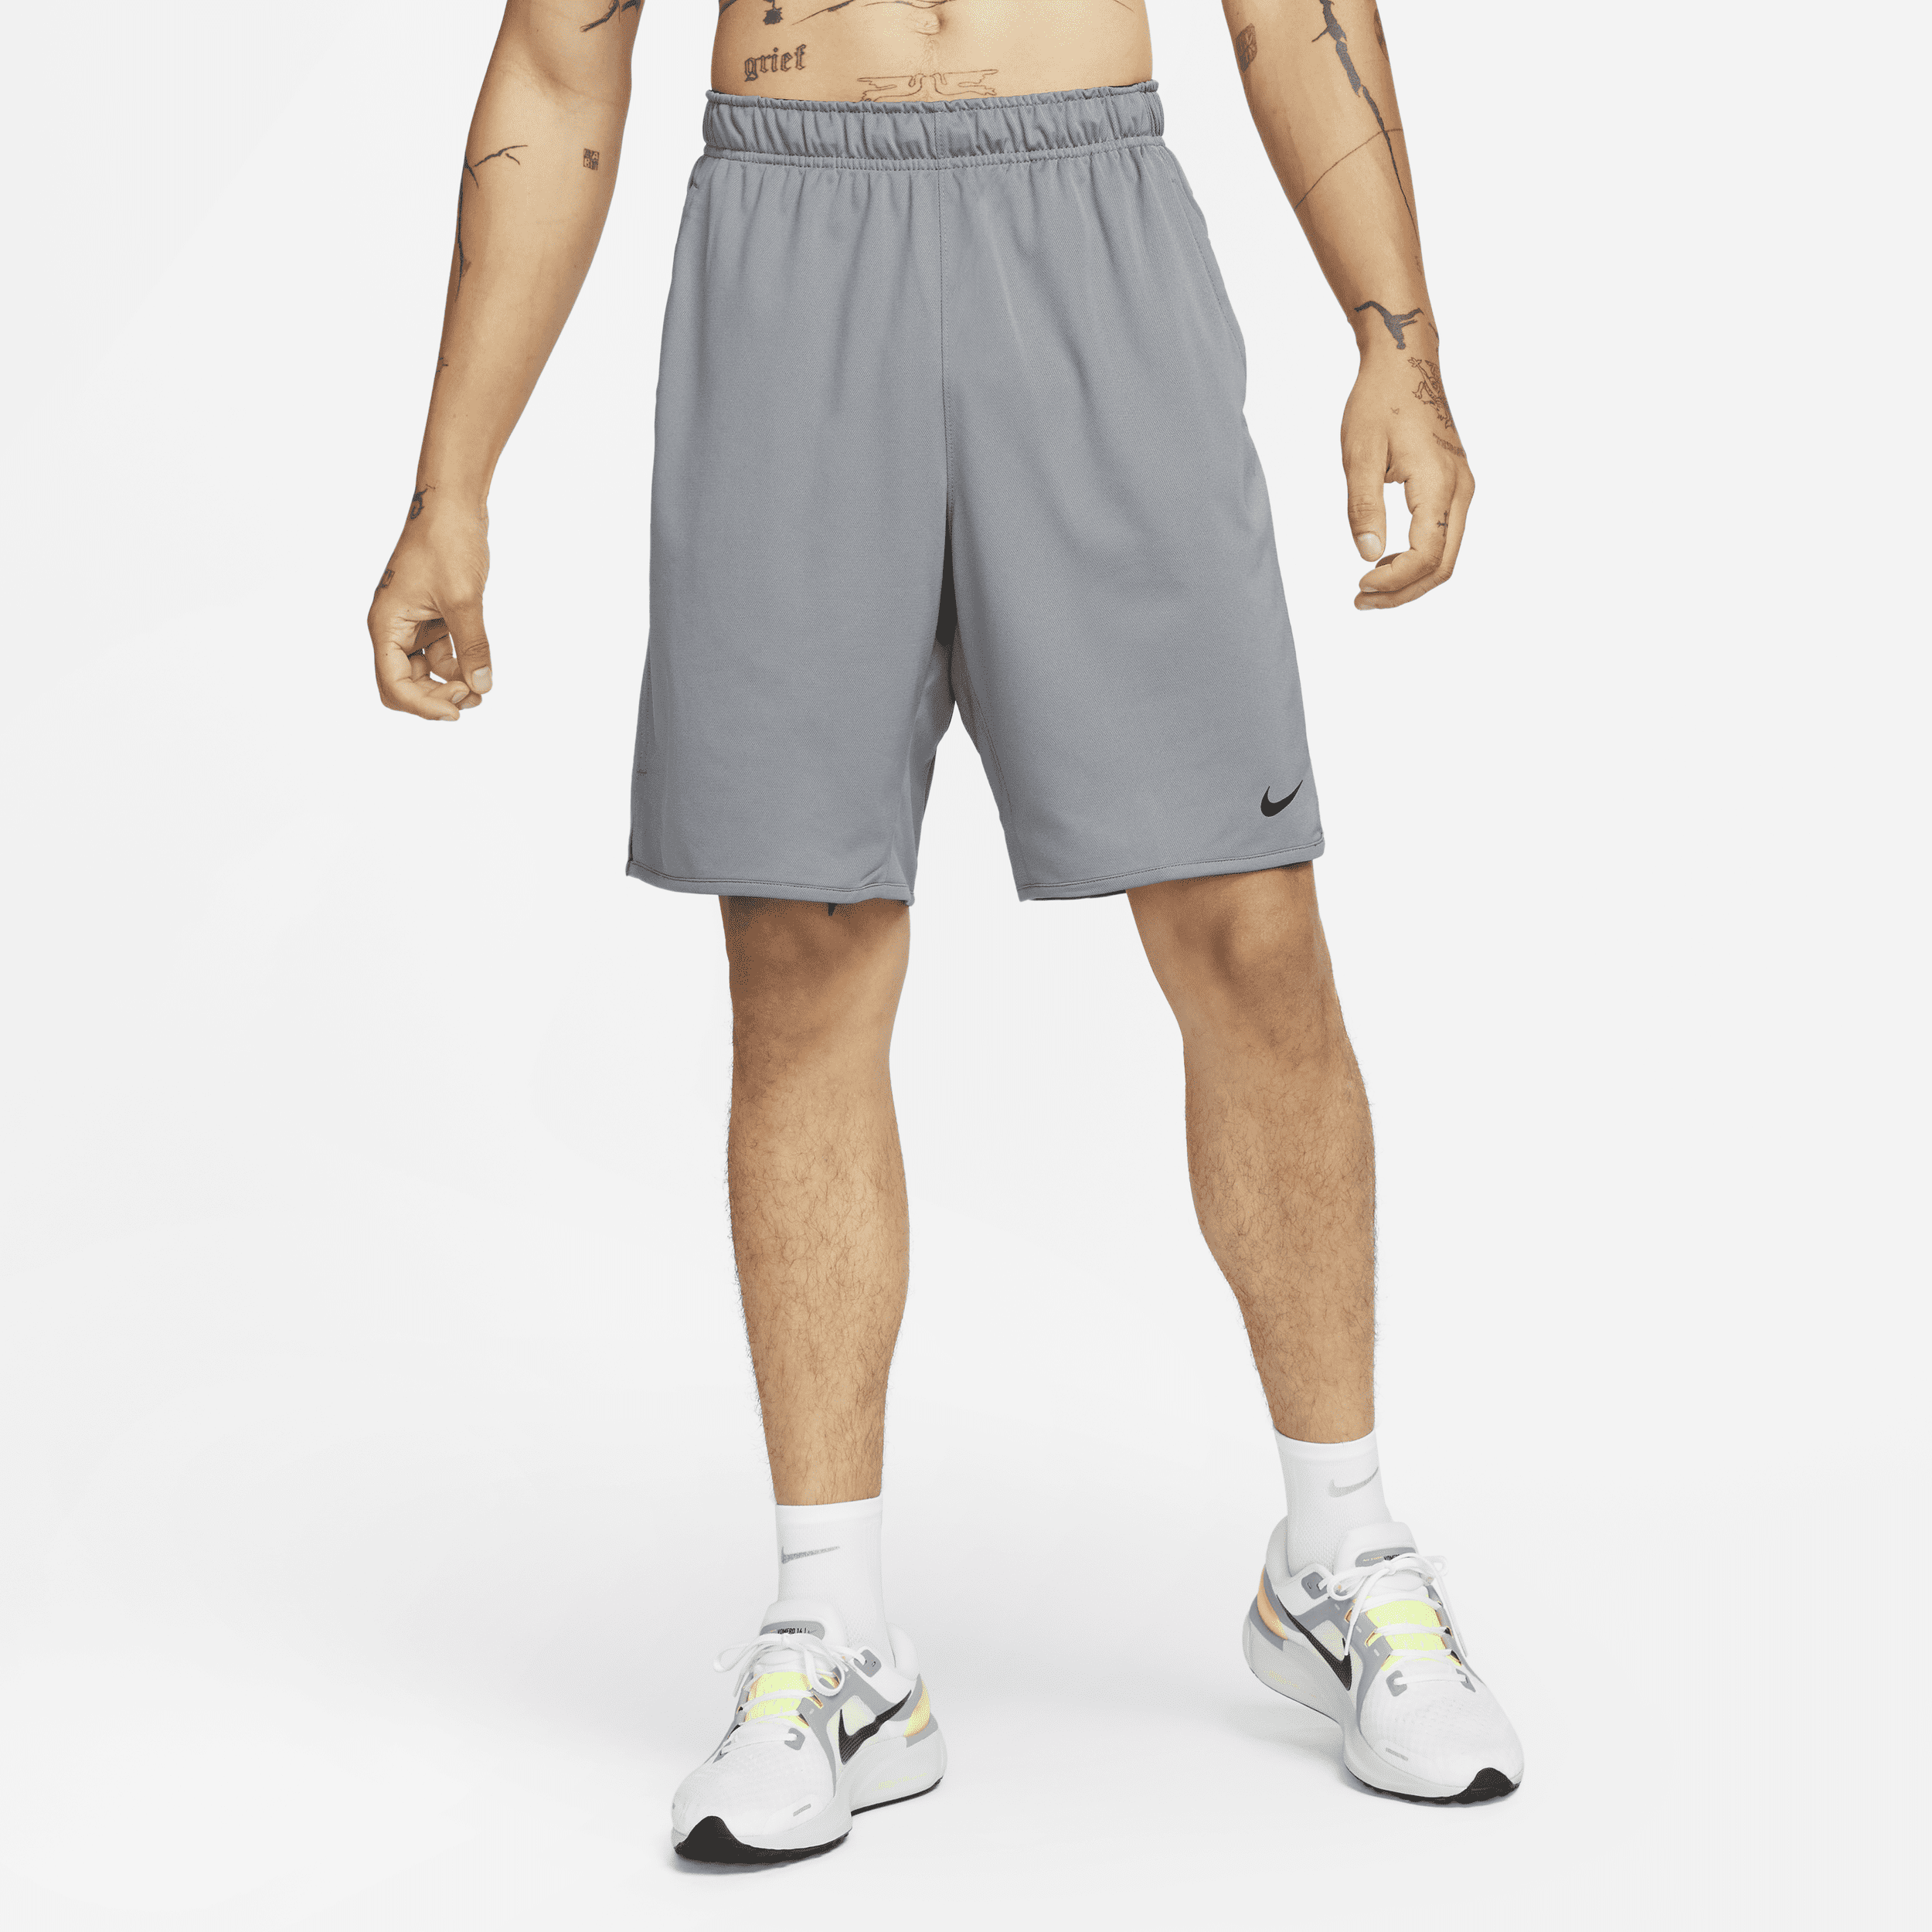 Alsidige Nike Totality-Dri-FIT-shorts (23 cm) uden for til mænd - grå